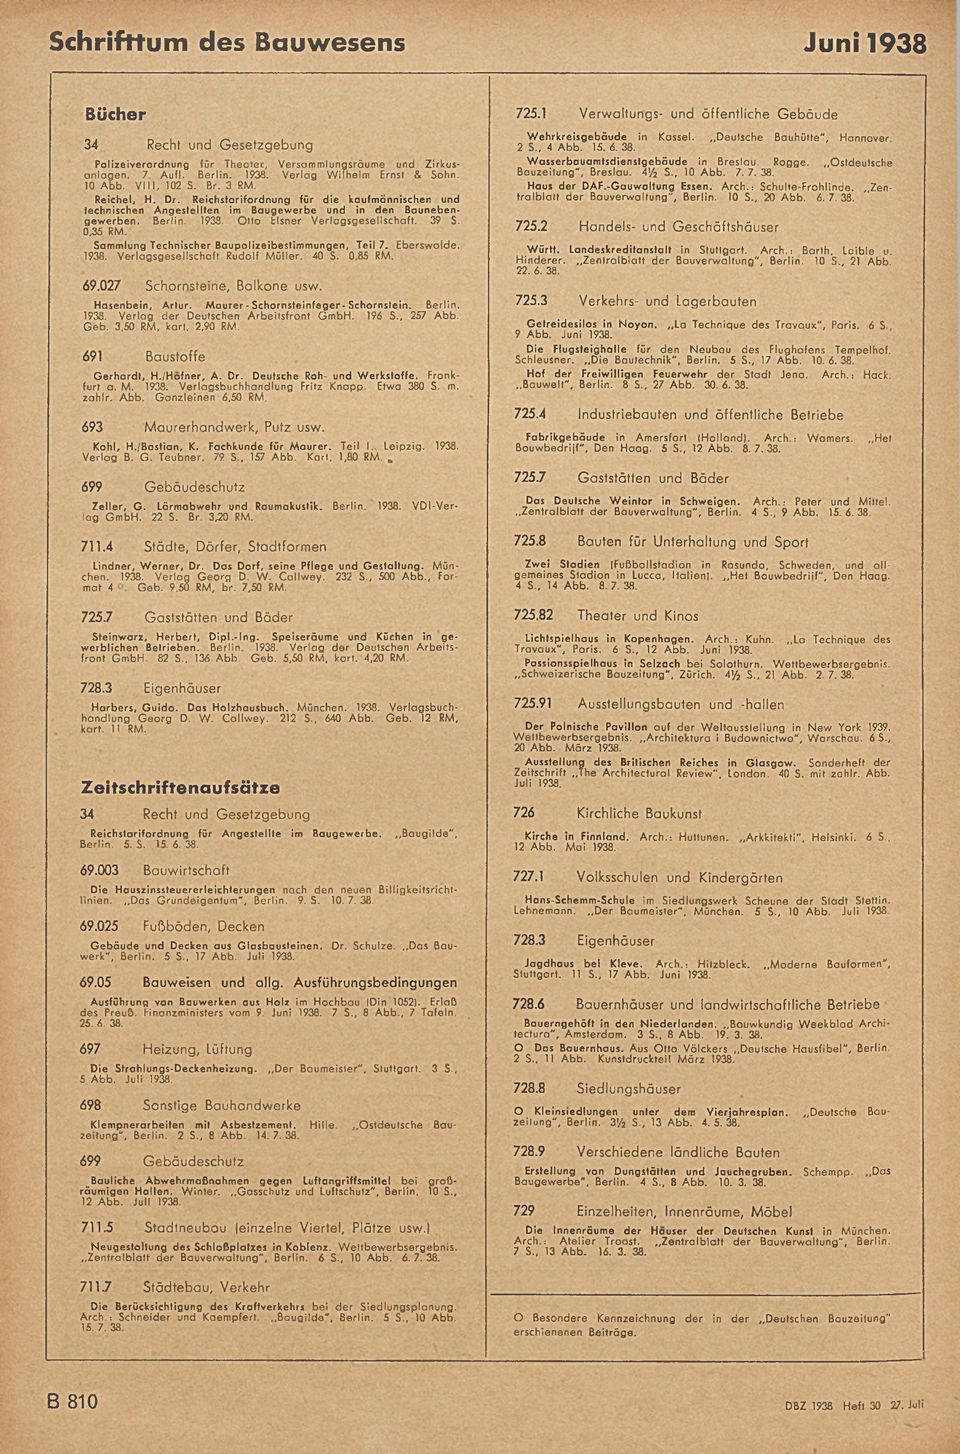 1938. Otto tlsner Verlagsgesellschaft. 39 S. 0,35 RM. Sammlung Technischer Baupolizeibeslimmungen, Teil 7. Eberswalde. 1938. Verlagsgesellschaft Rudolf Müller. 40 S. 0,85 RM.